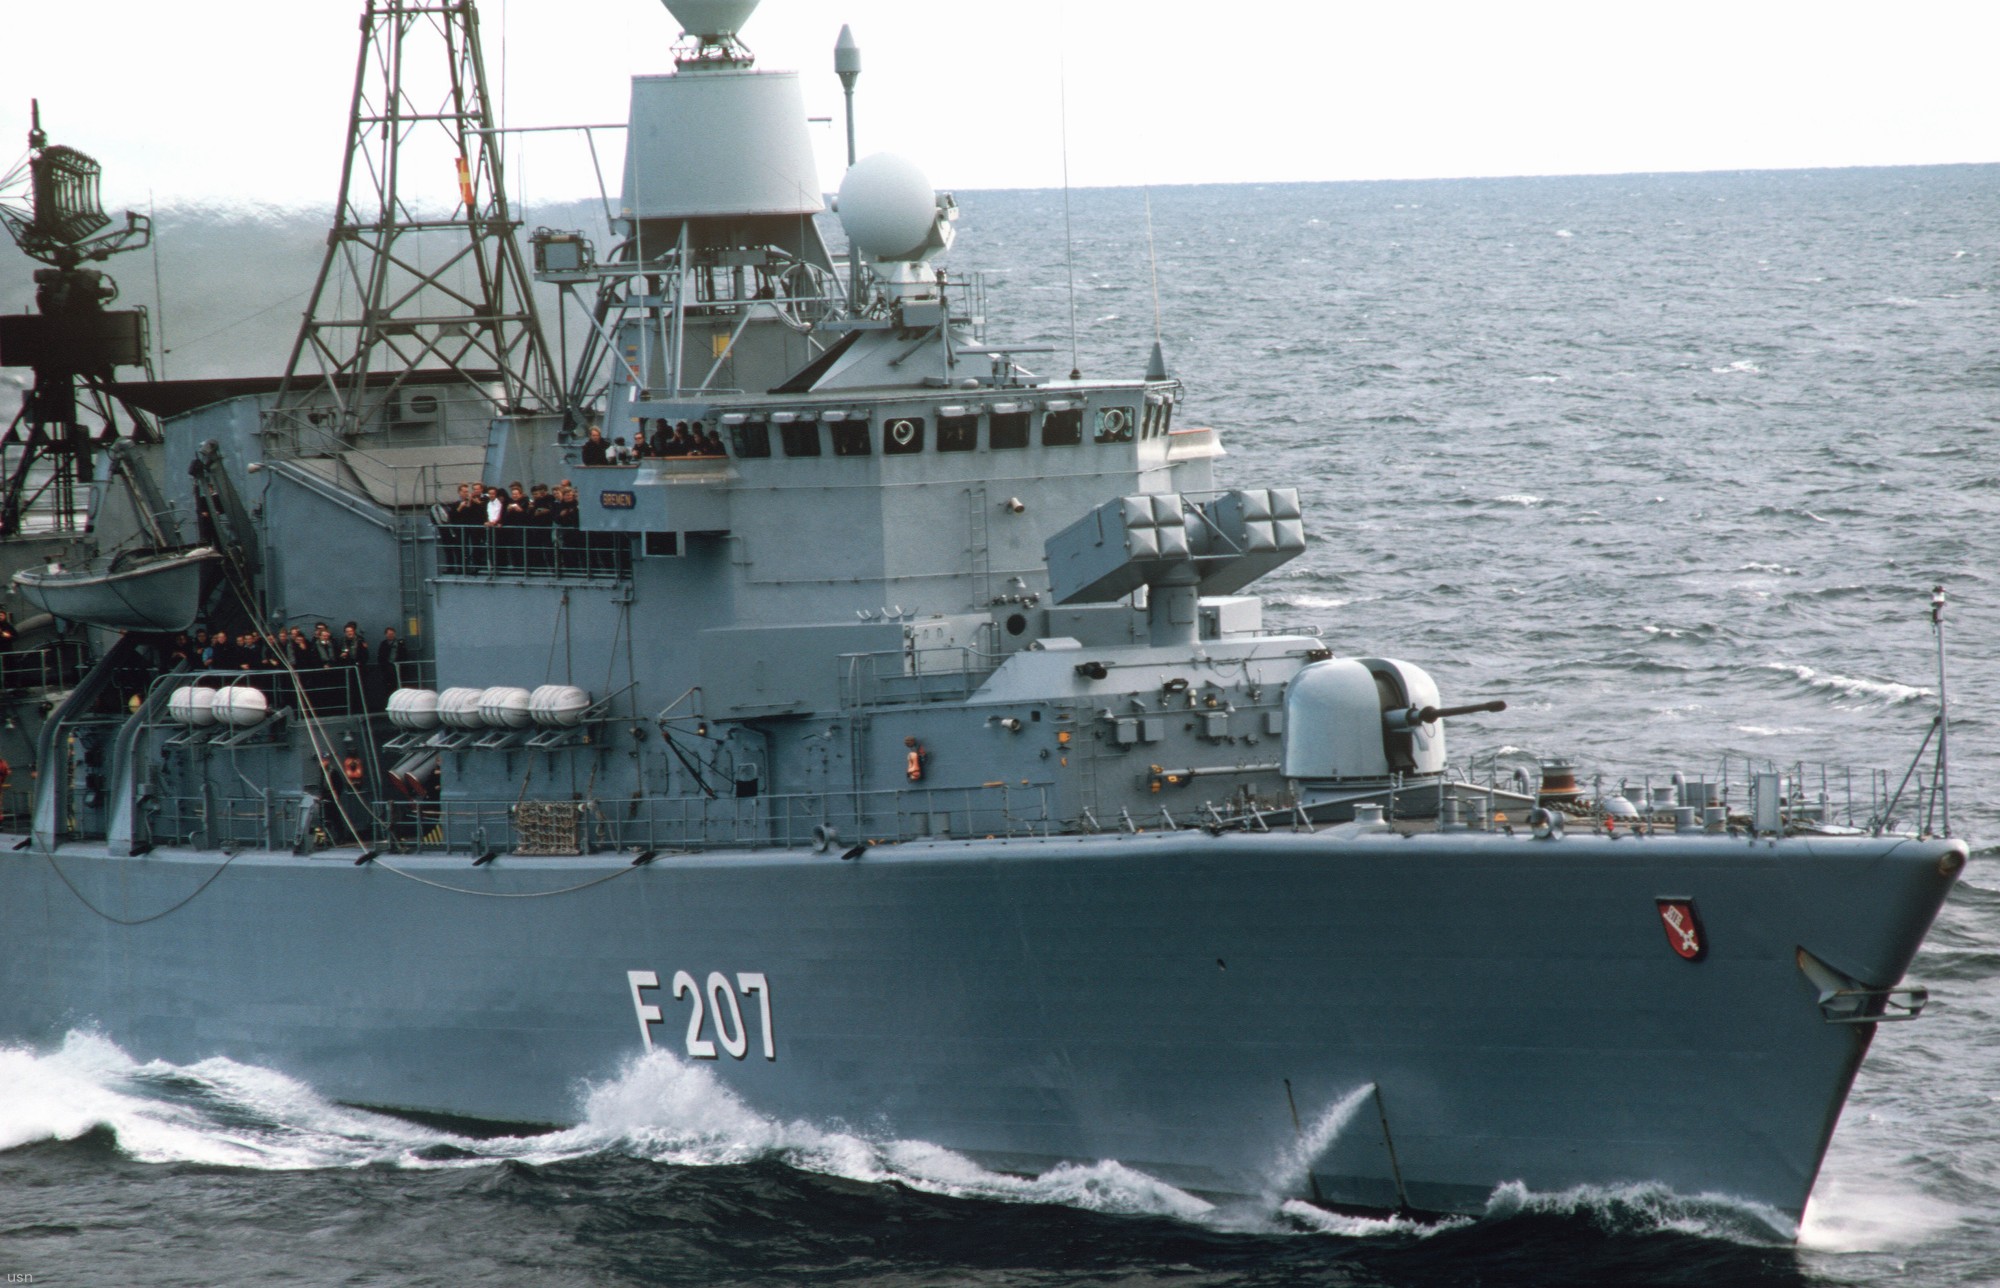 f-207 fgs bremen type 122 class frigate german navy 11